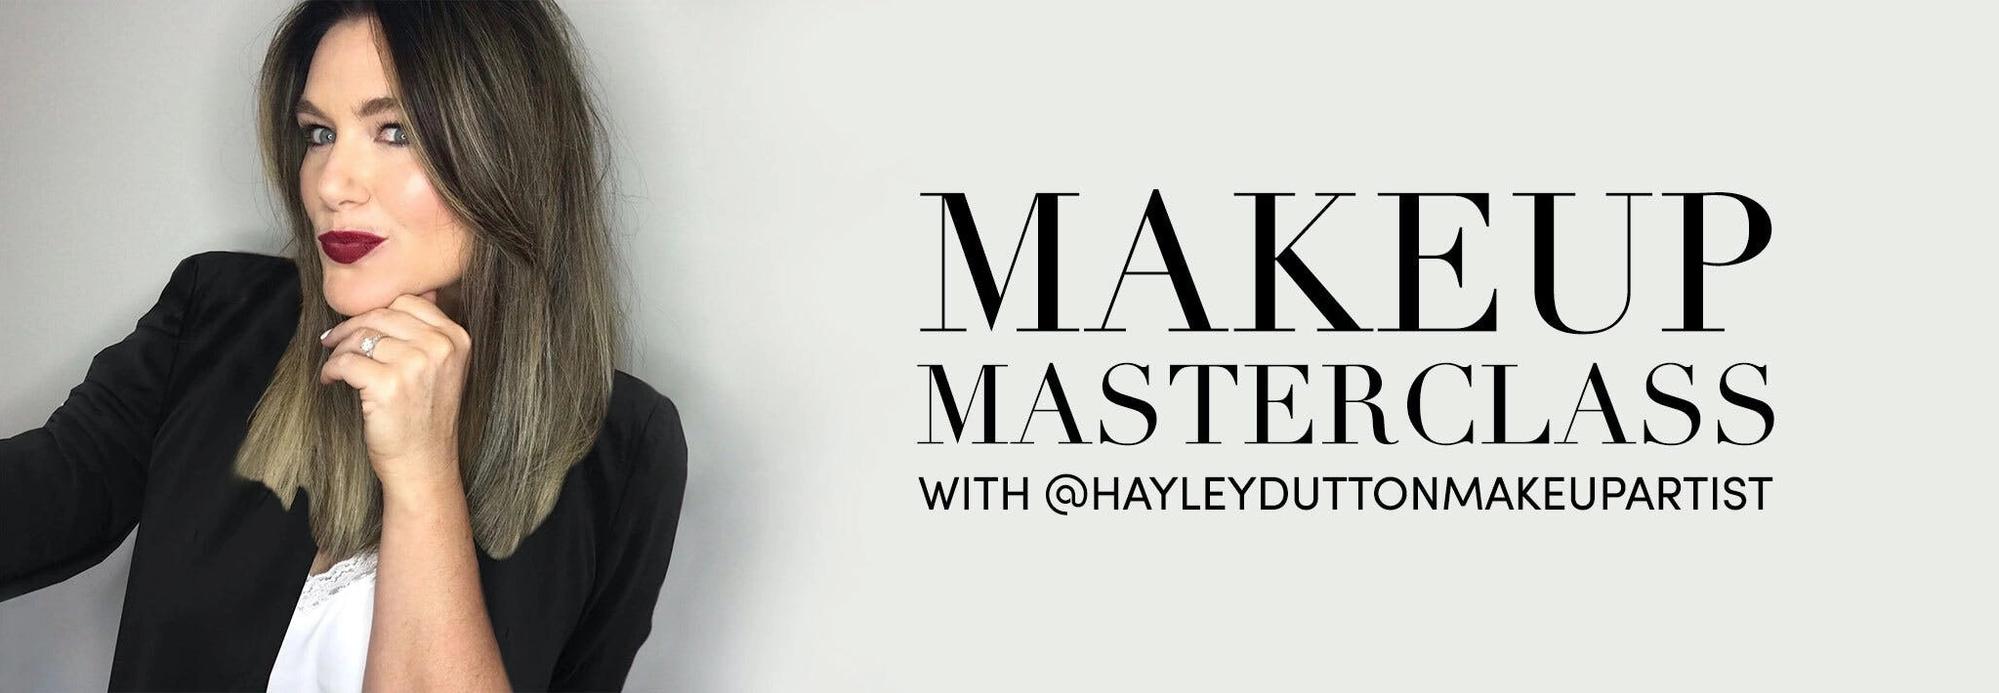 Makeup Masterclass with @hayleyduttonmakeupartist